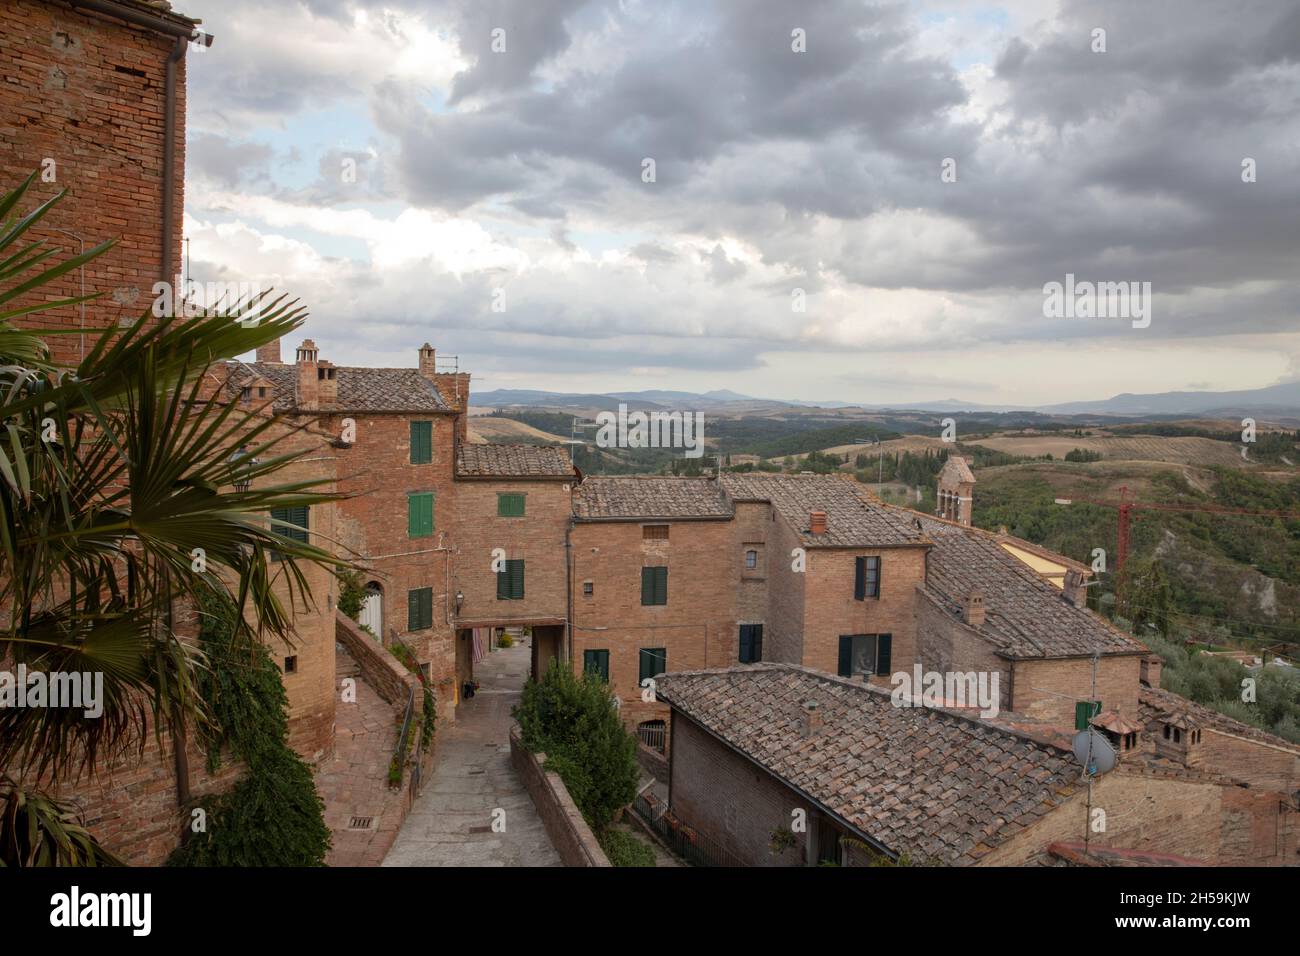 Chiusure village, Asciano, Tuscany, Italy Stock Photo